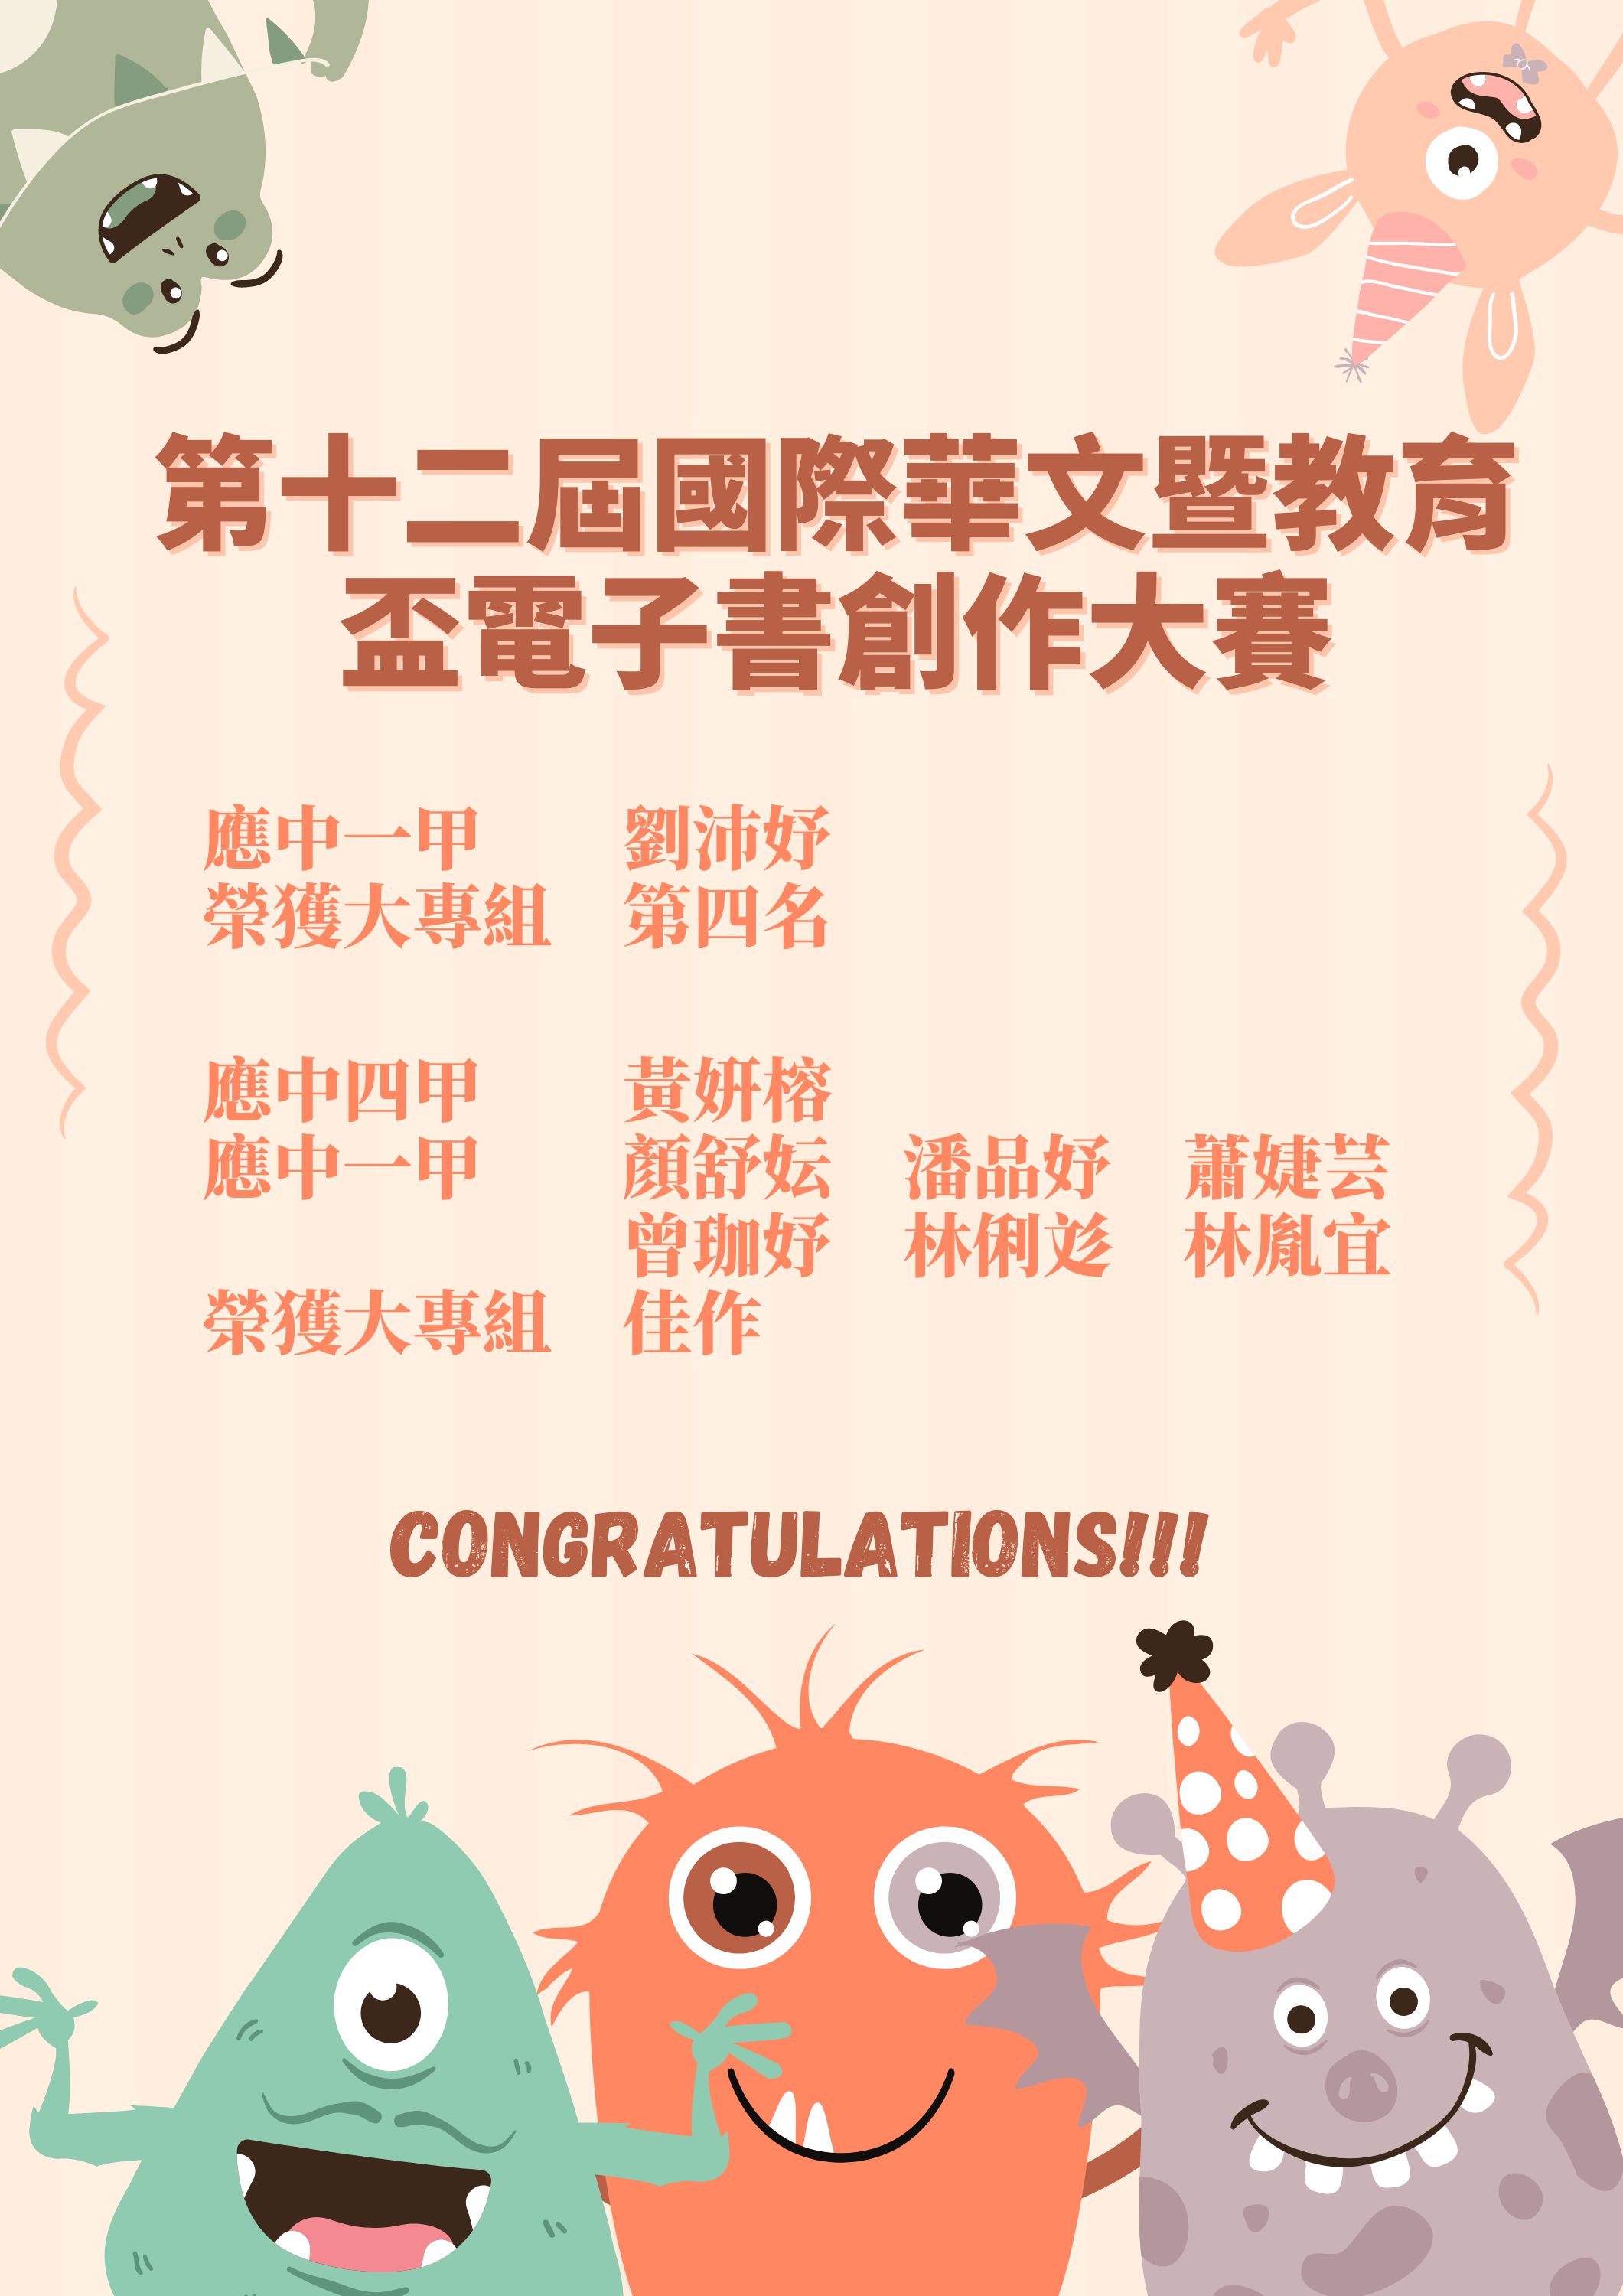 第十二屆國際華文暨教育盃電子書創作大賽獲獎